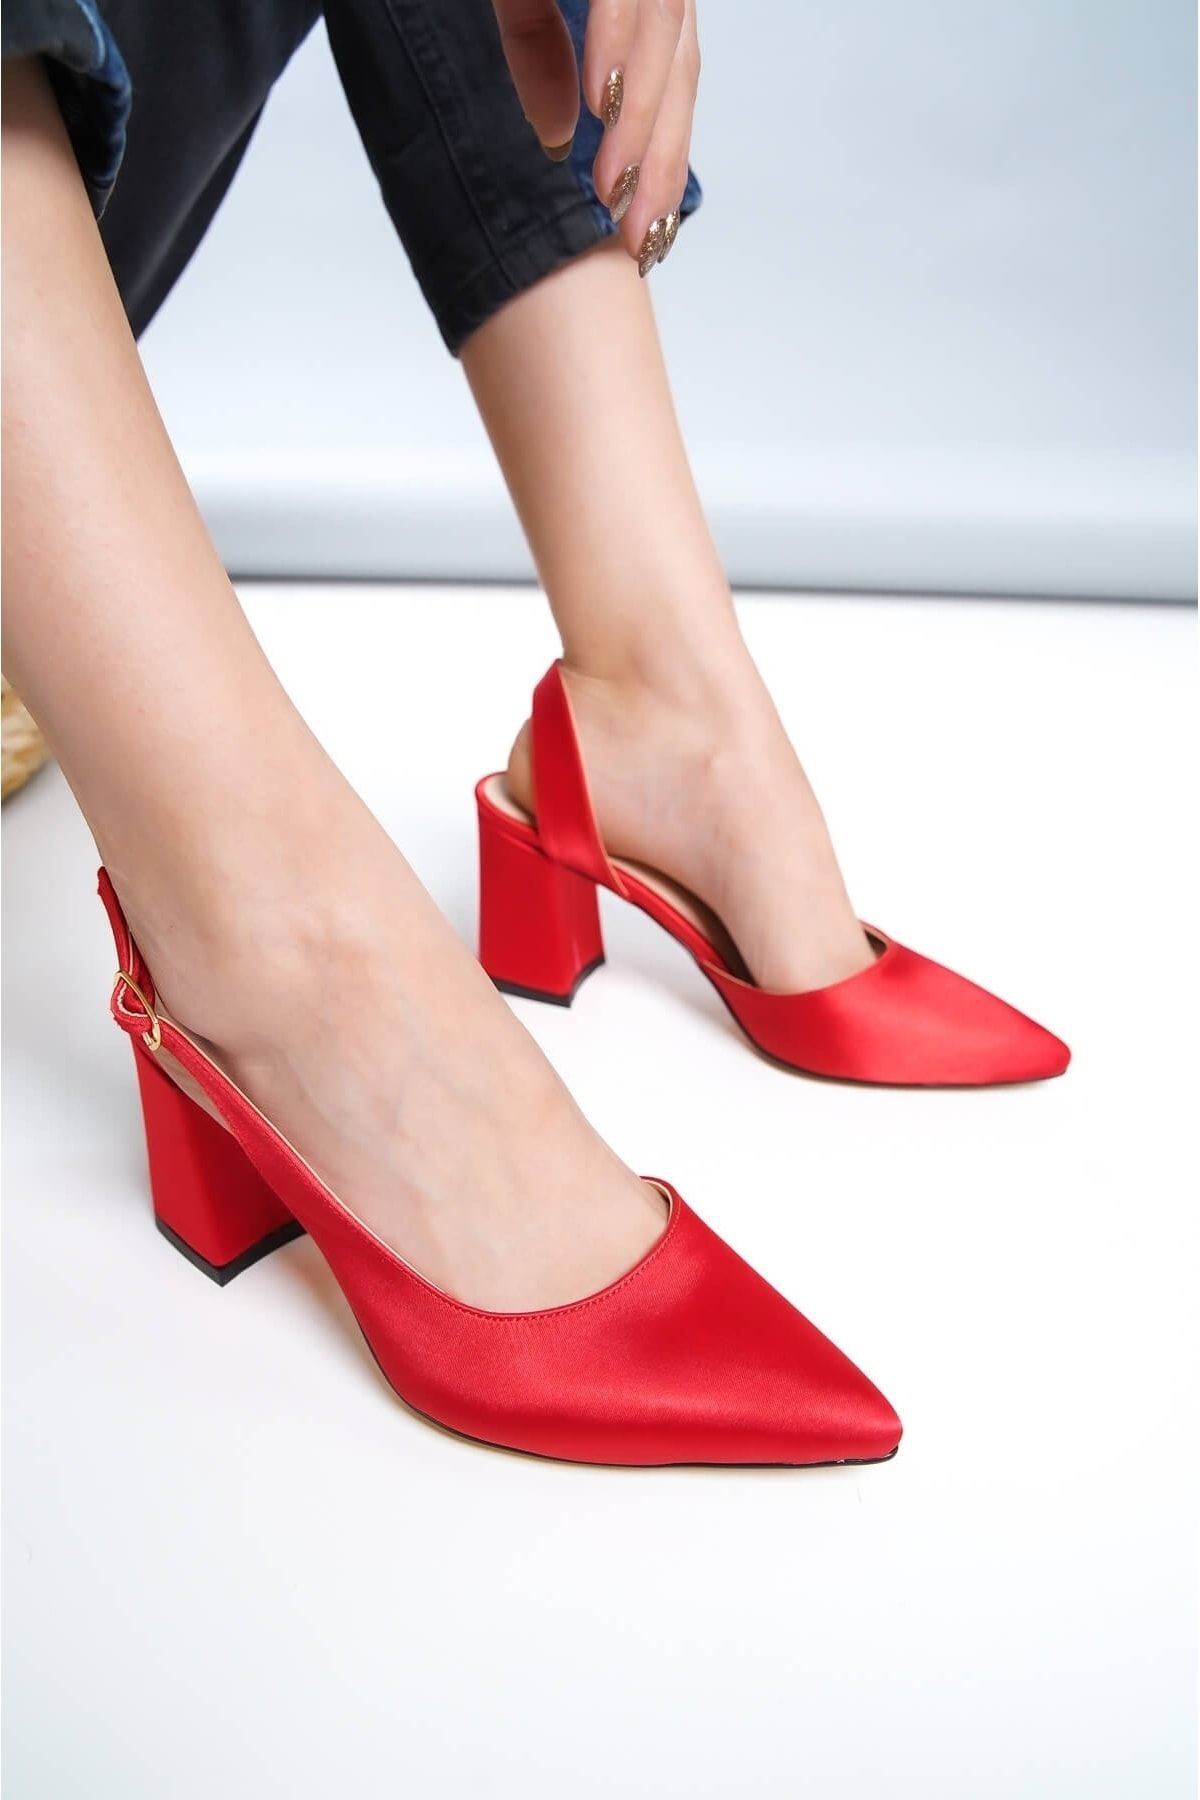 DURUNUN BUTİĞİ Duhra Kırmızı Saten Topuklu Günlük Kullanım Ayakkabı